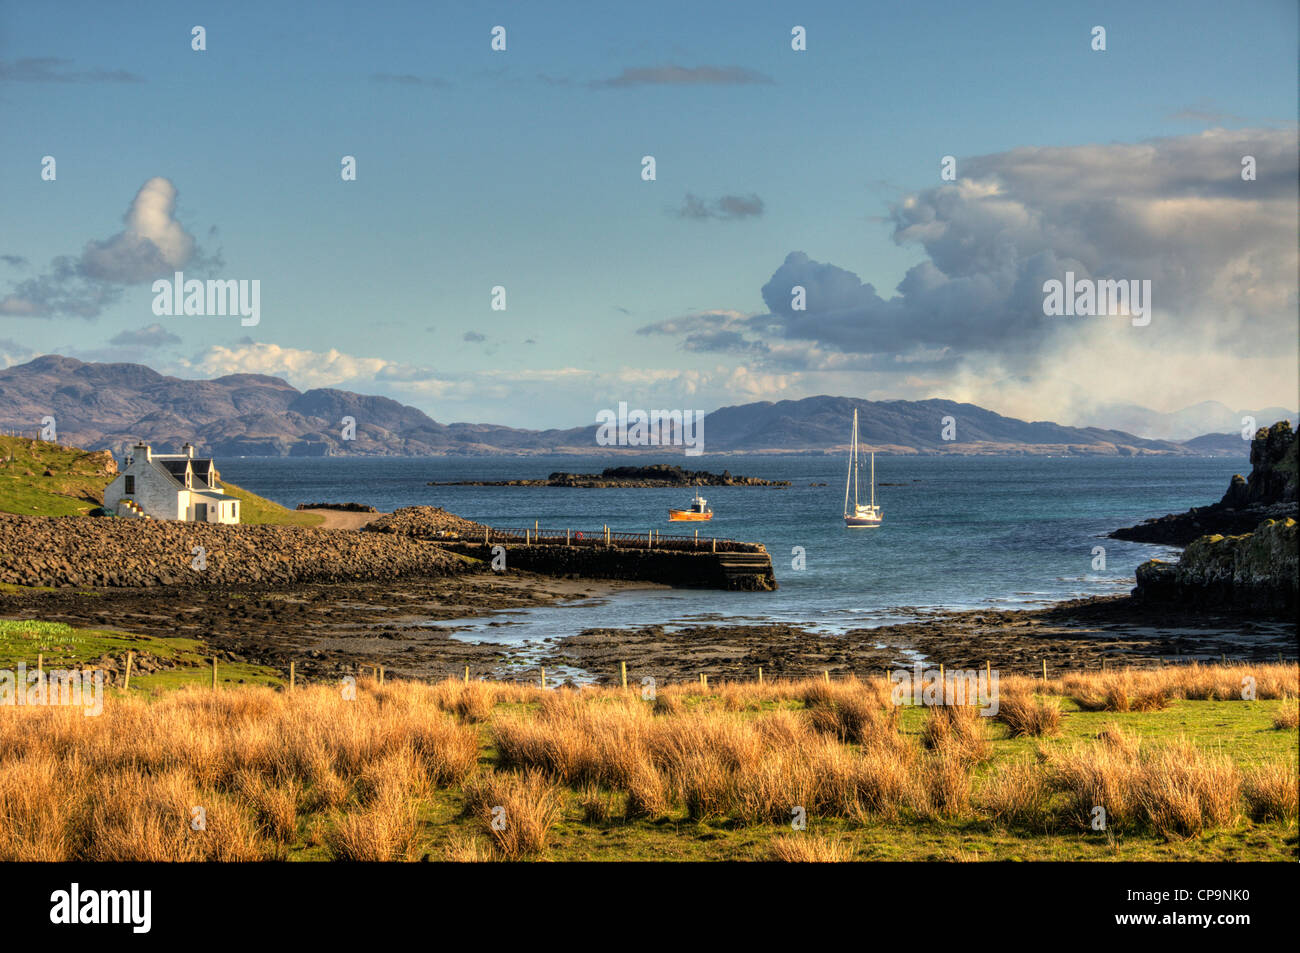 Un paisaje de puerto mor Isle of muck con barcos en la bahía y el continente en la parte trasera del terreno Foto de stock